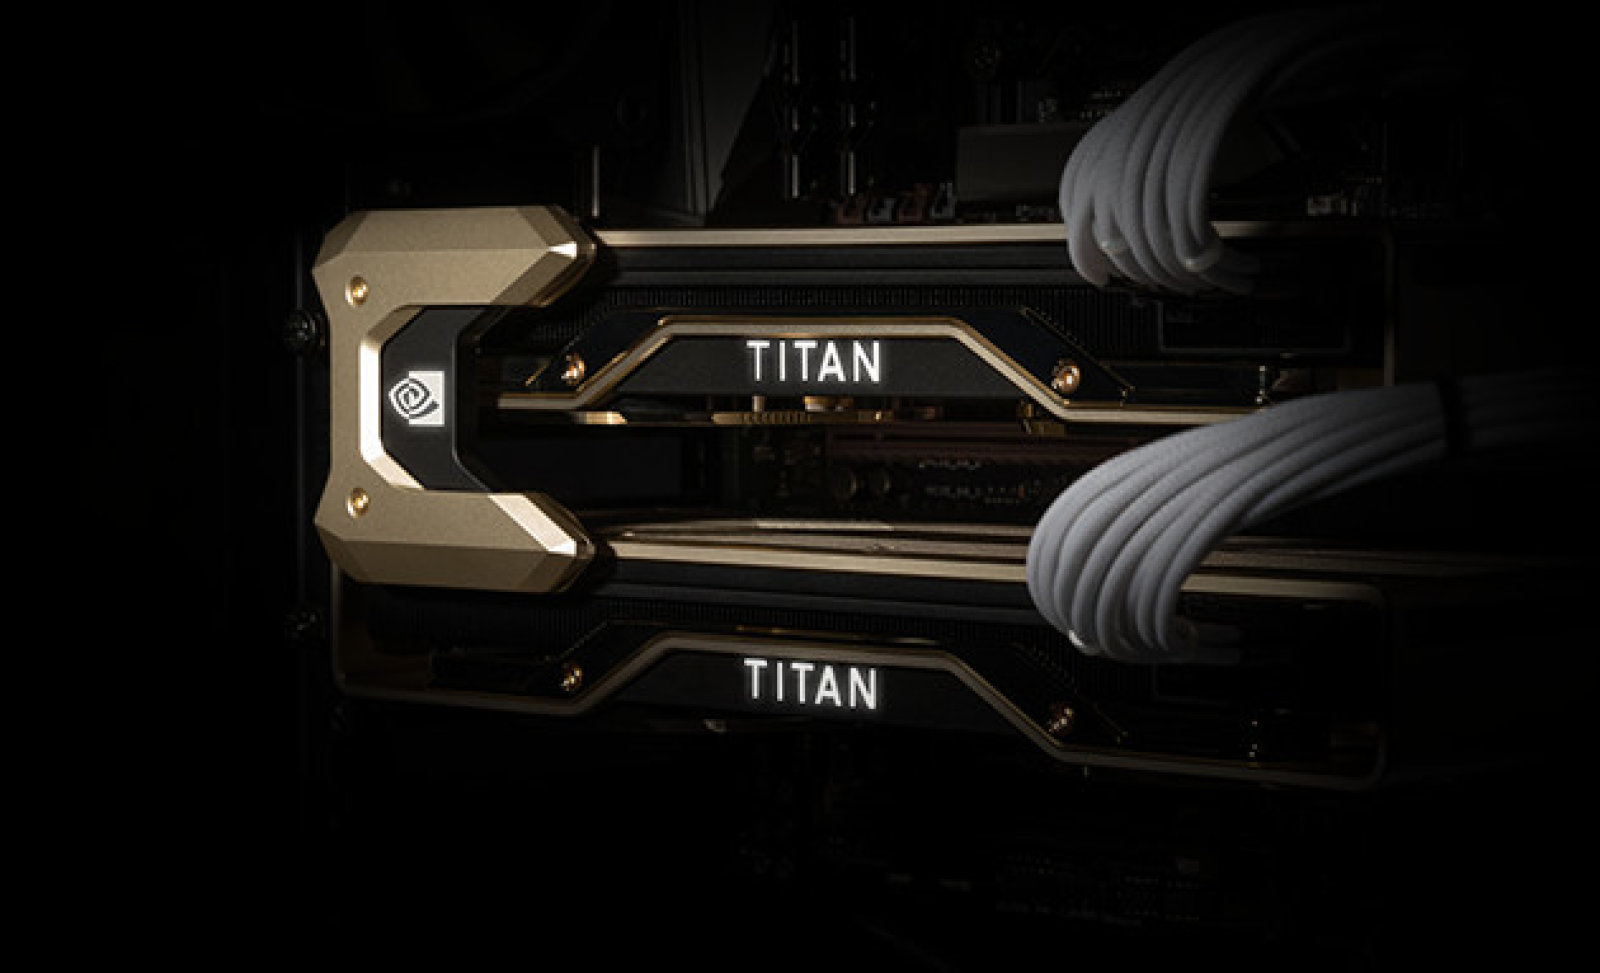 NVIDIA ra mắt Titan RTX trang bị 4,608 lõi CUDA và 24GB VRAM